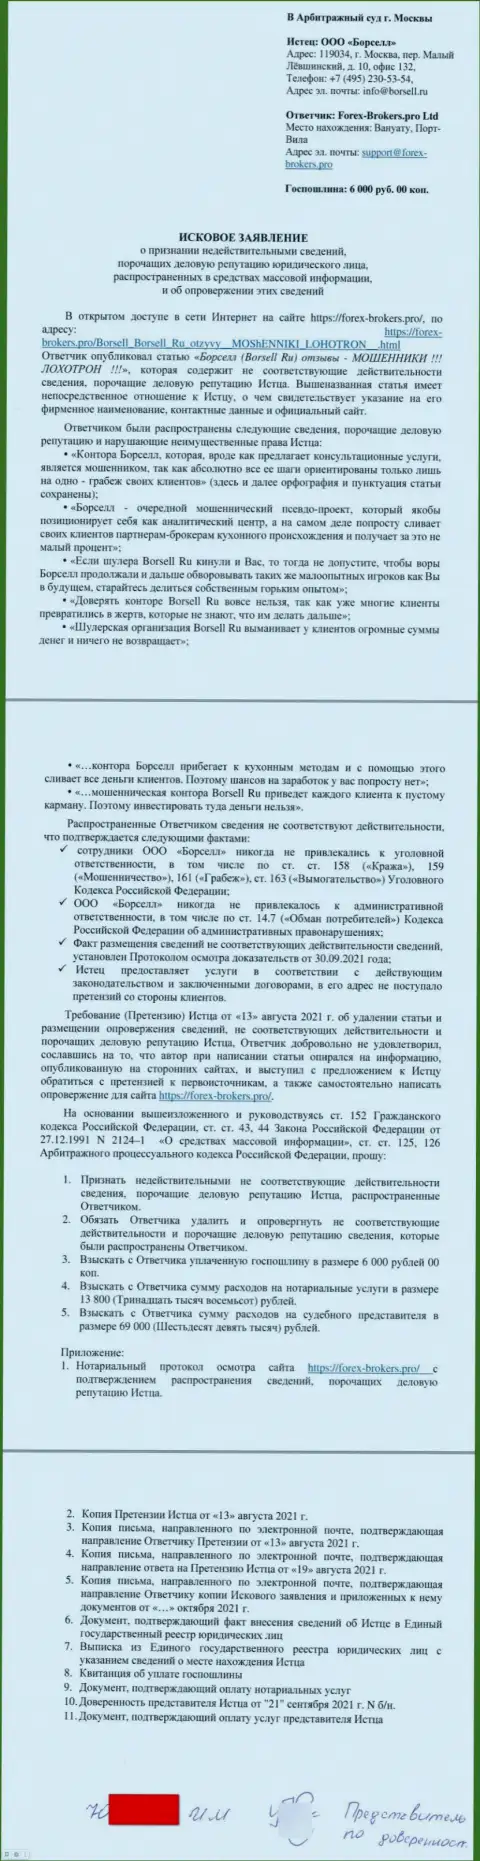 Само исковое заявление в суд от некого представителя аналитической конторы Borsell Ru